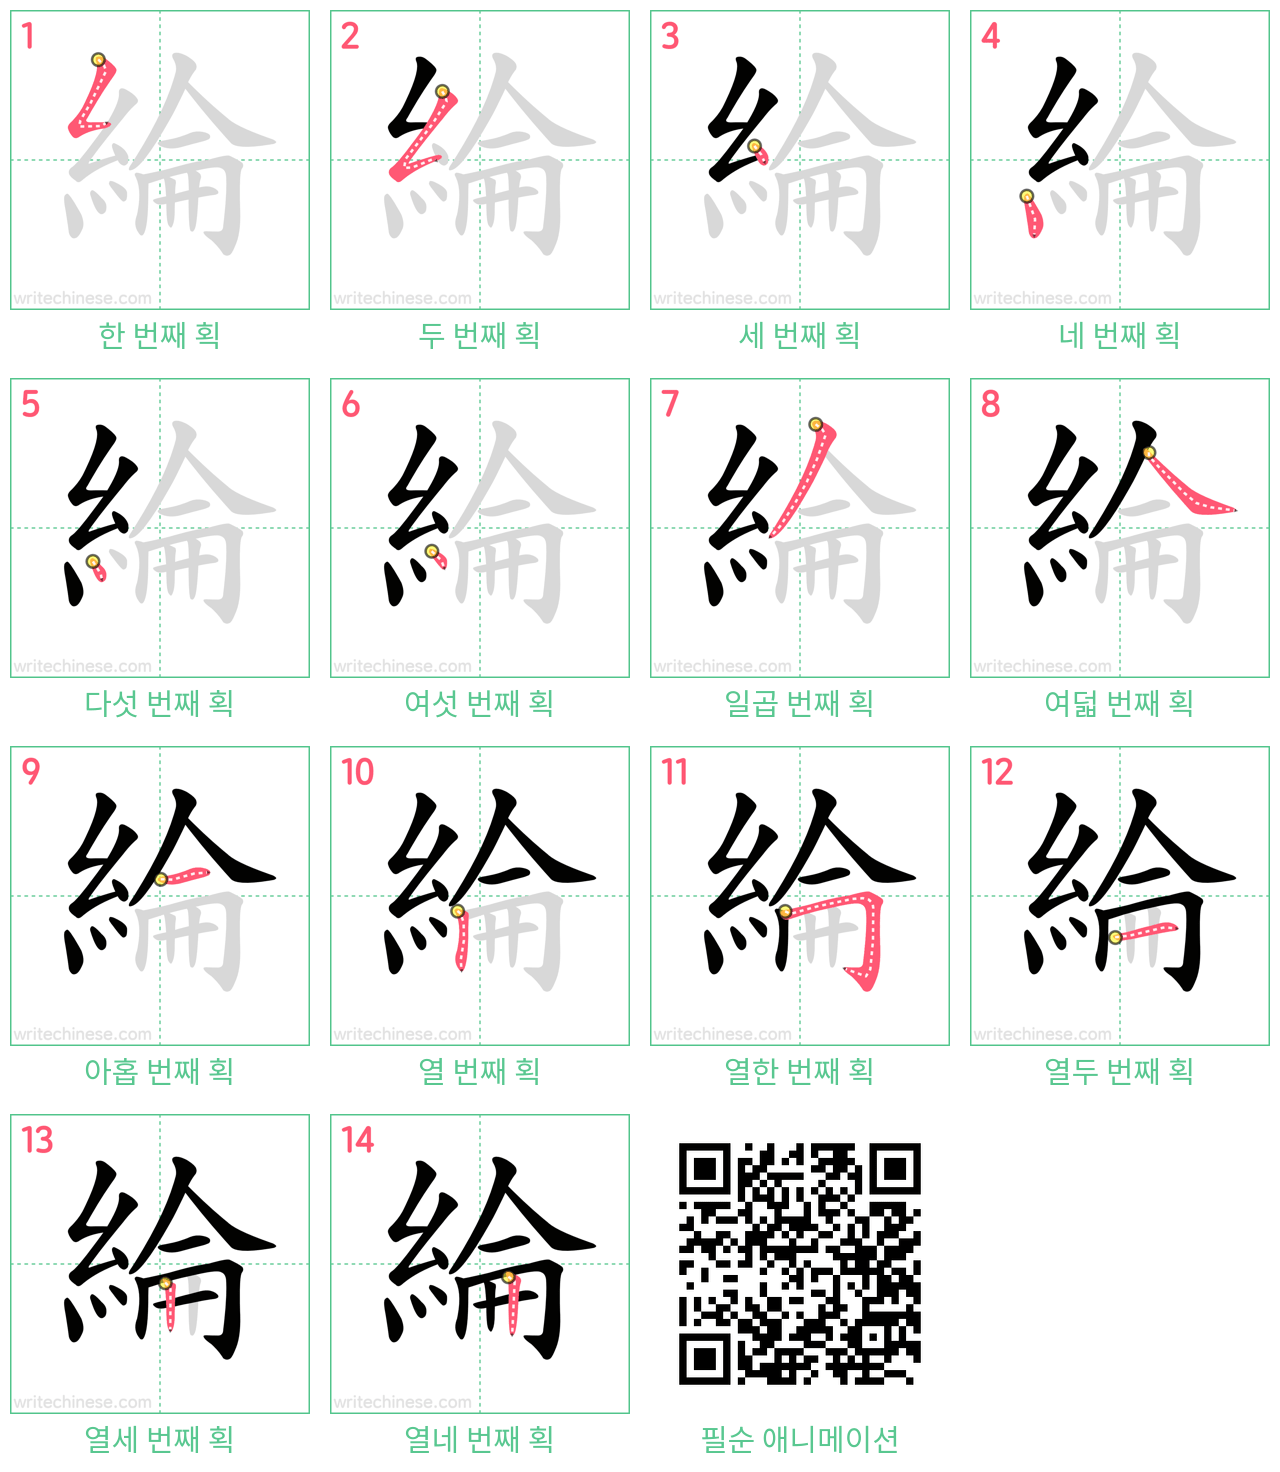 綸 step-by-step stroke order diagrams